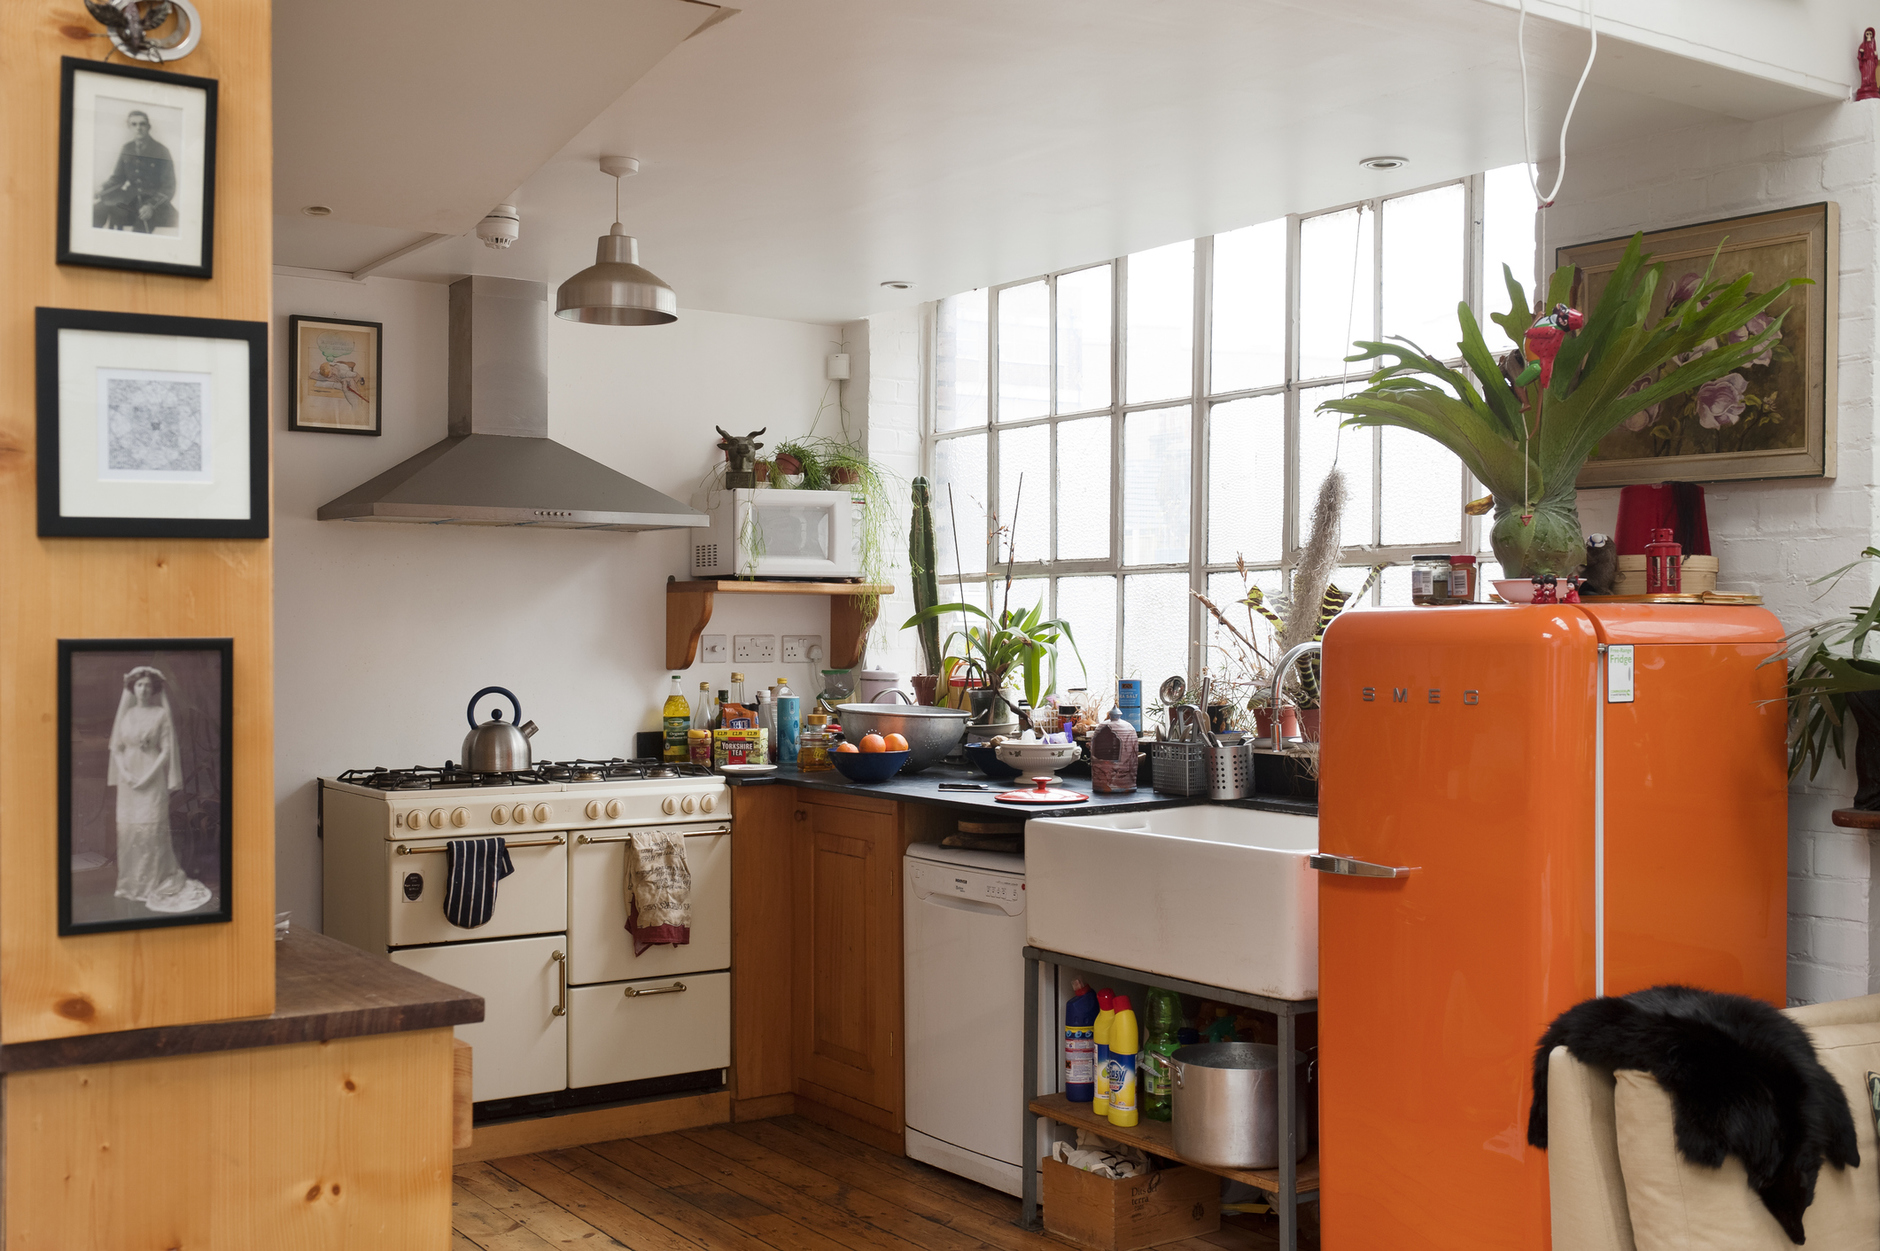 Đối với phòng bếp nhỏ, hãy chọn một khu vực hay món nội thất, thiết bị,... nổi bật để lôi cuốn người nhìn.